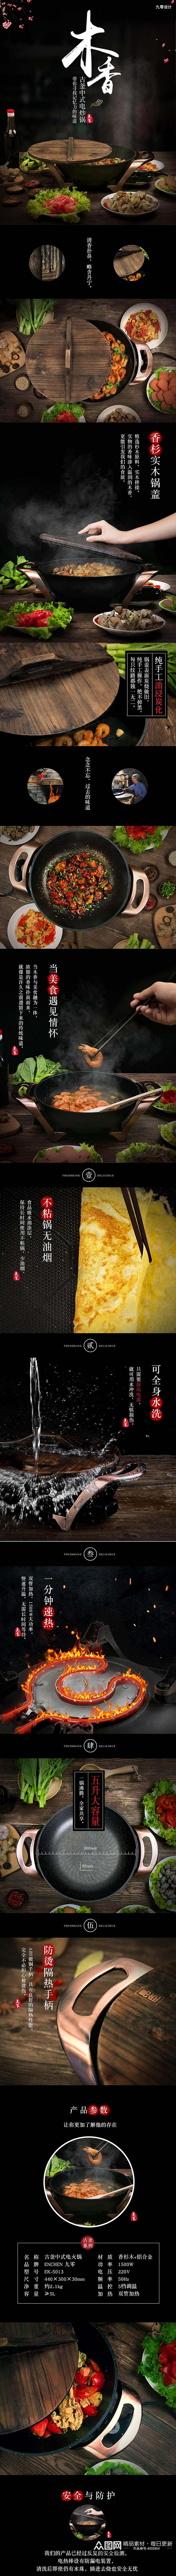 木香铁锅厨具手机版详情页素材